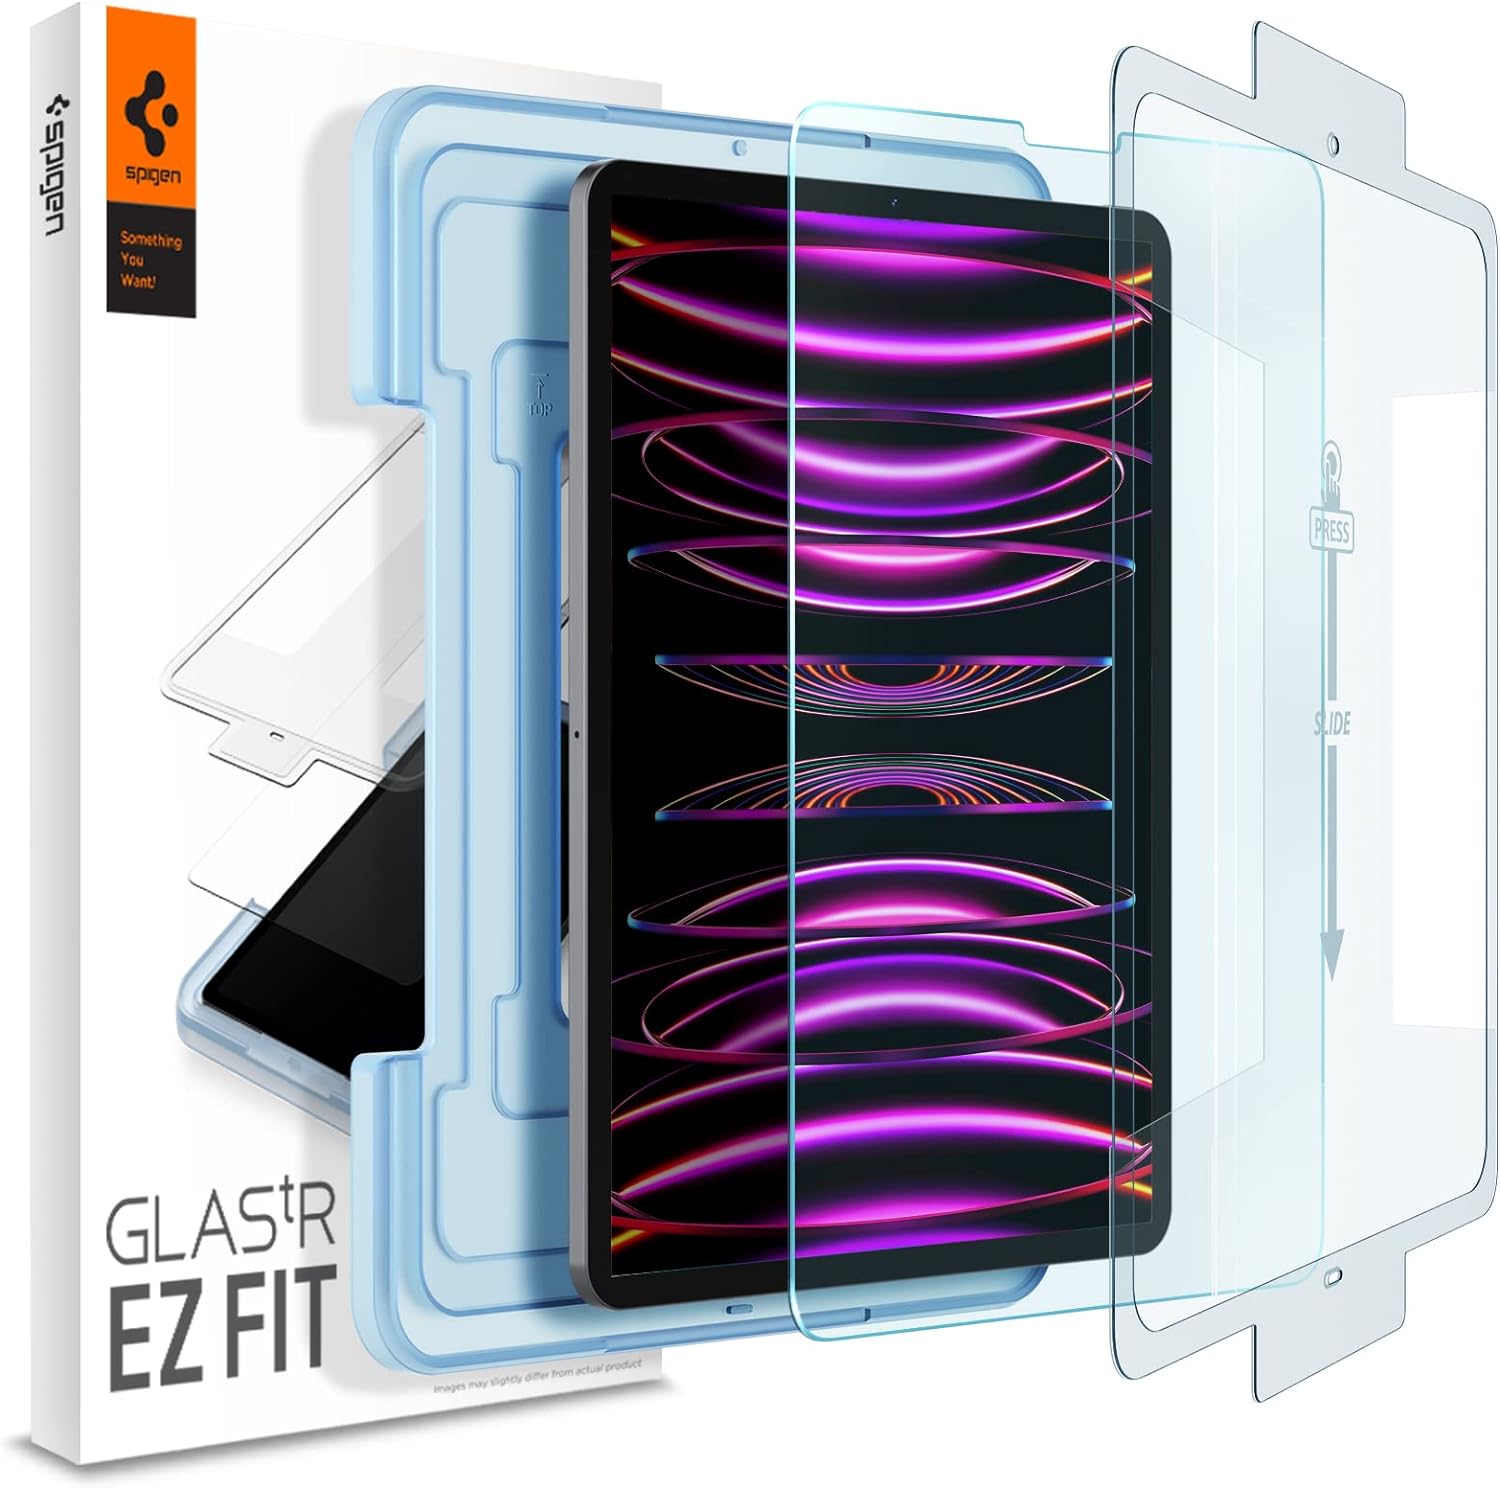 Protector De Pantalla Spigen Glastr Ez Fit iPad Pro 12.9